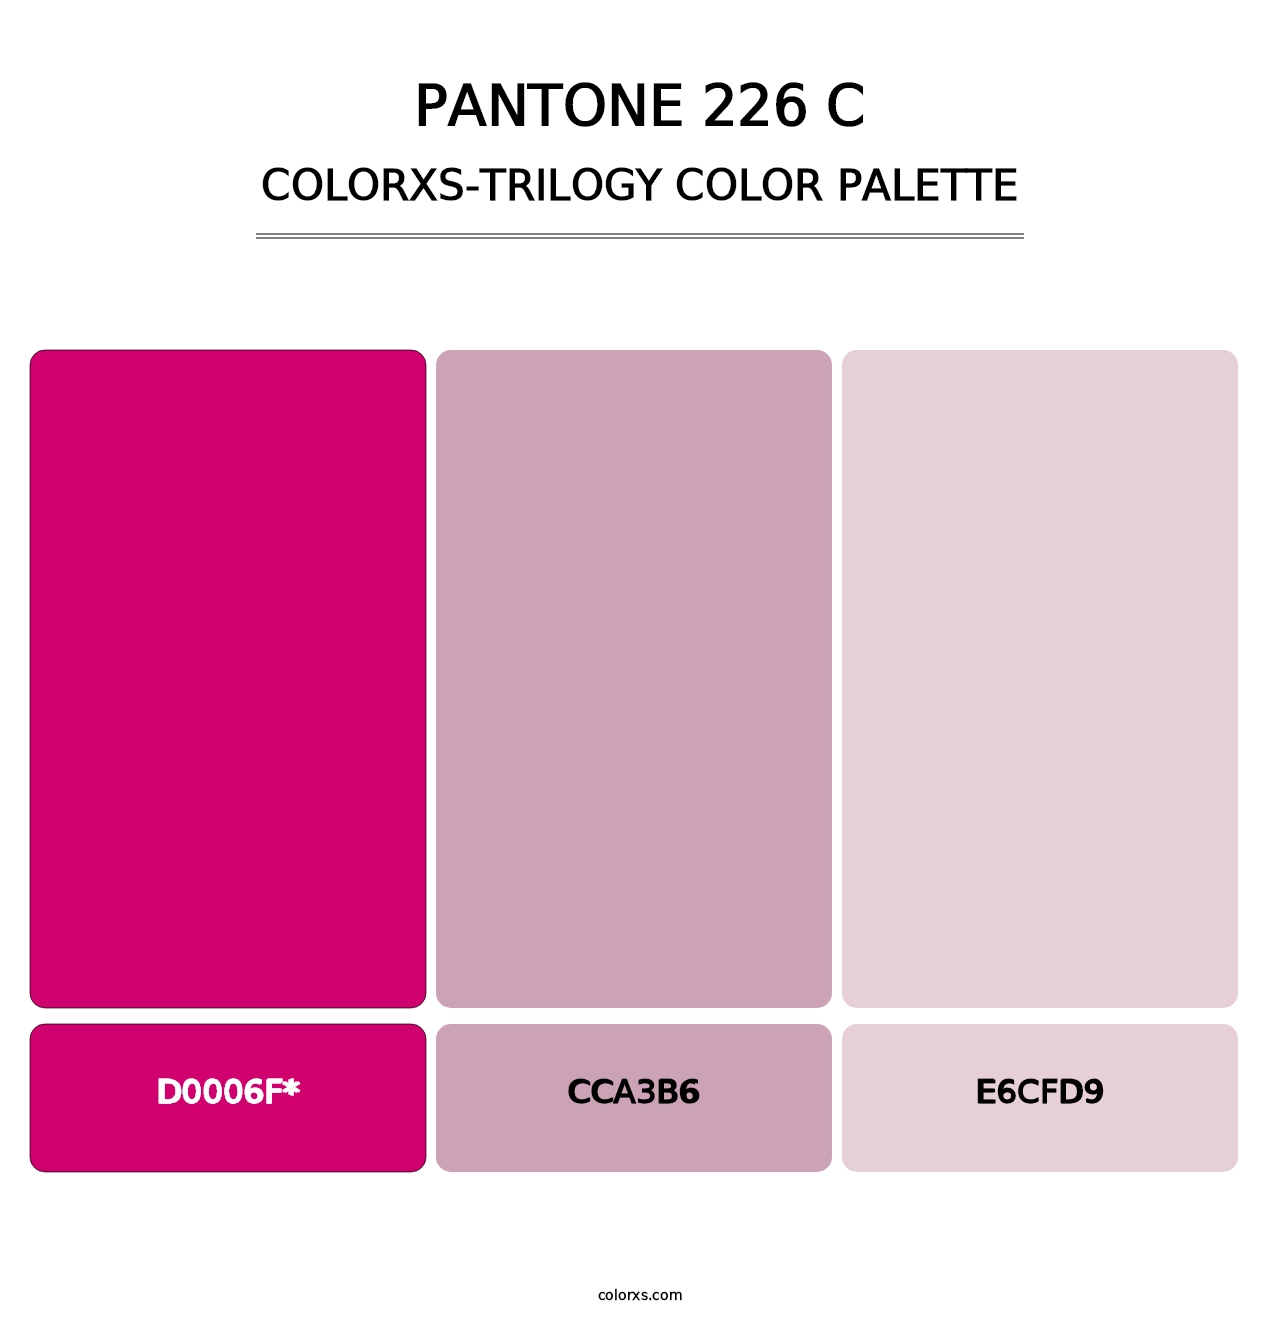 PANTONE 226 C - Colorxs Trilogy Palette